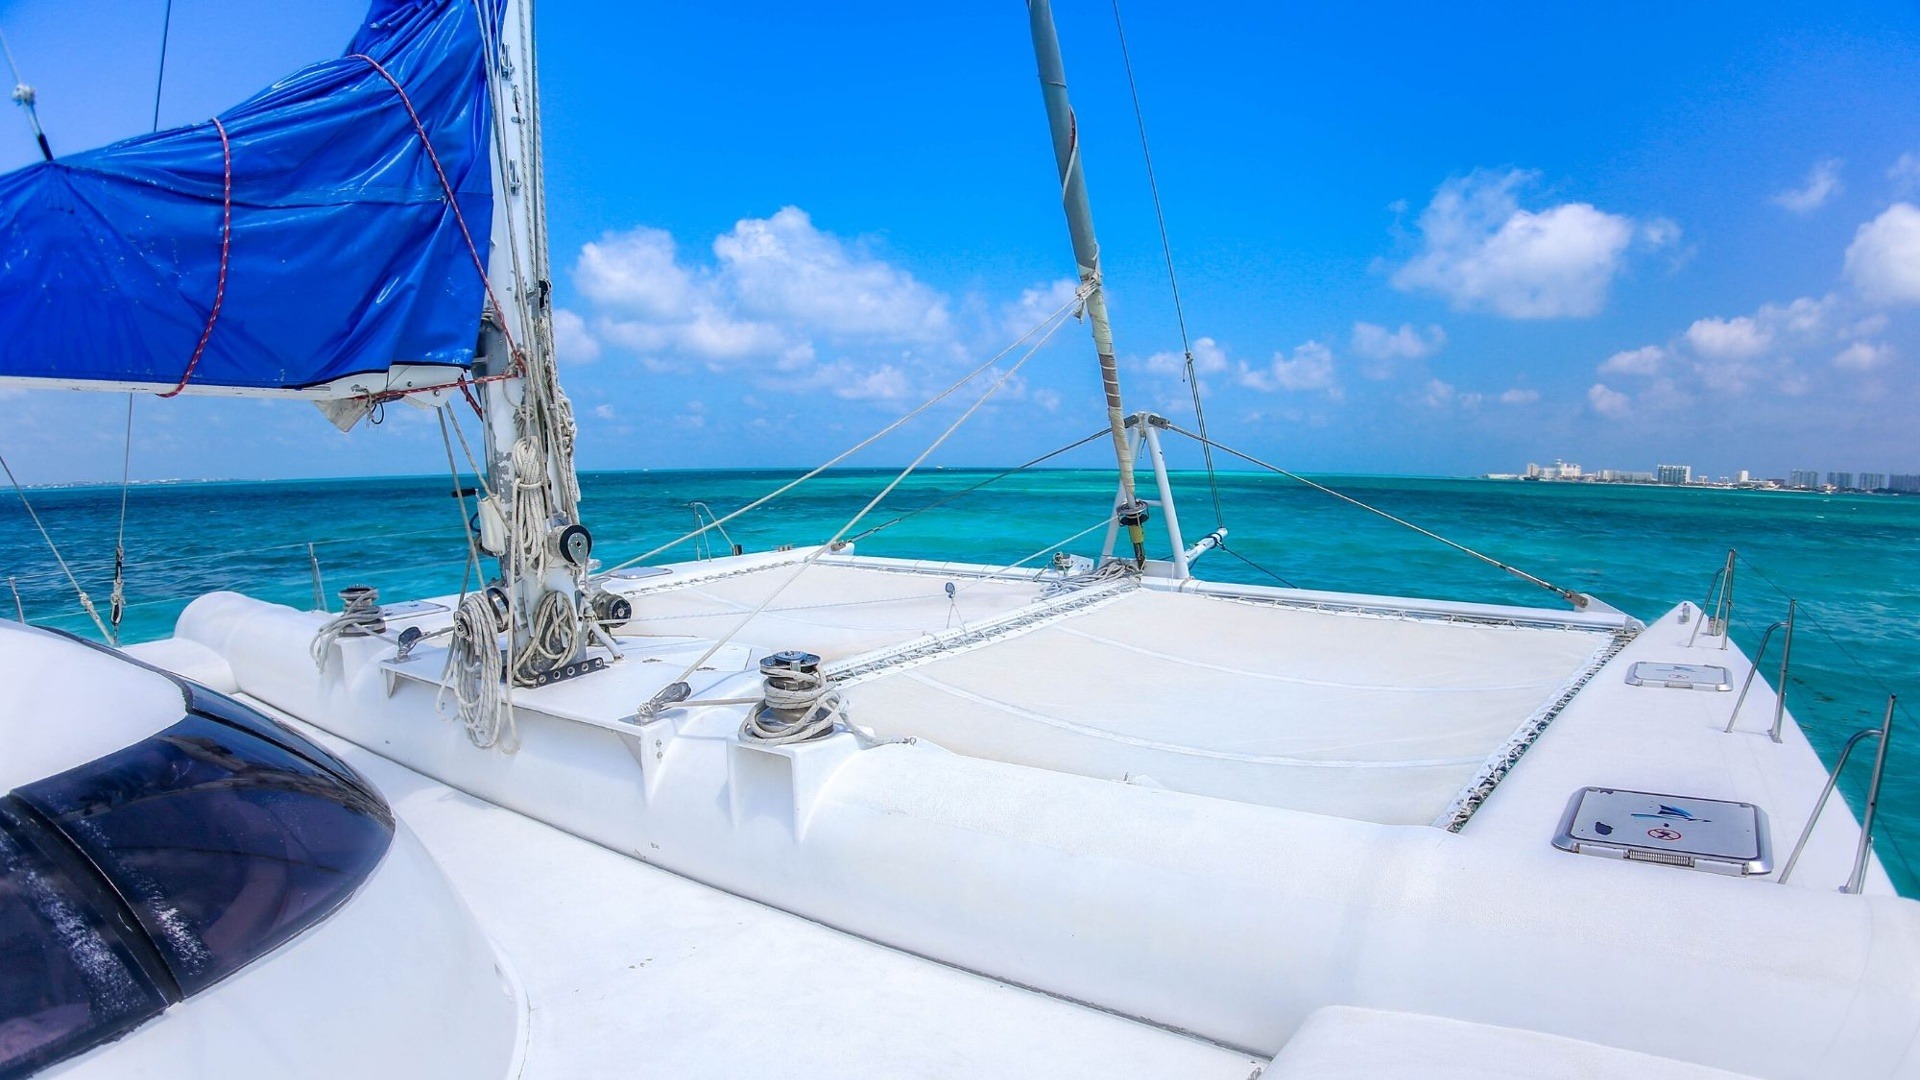 1 - LoRes - Induna - Isla Mujeres Catamaran Tour - Cancun Sailing